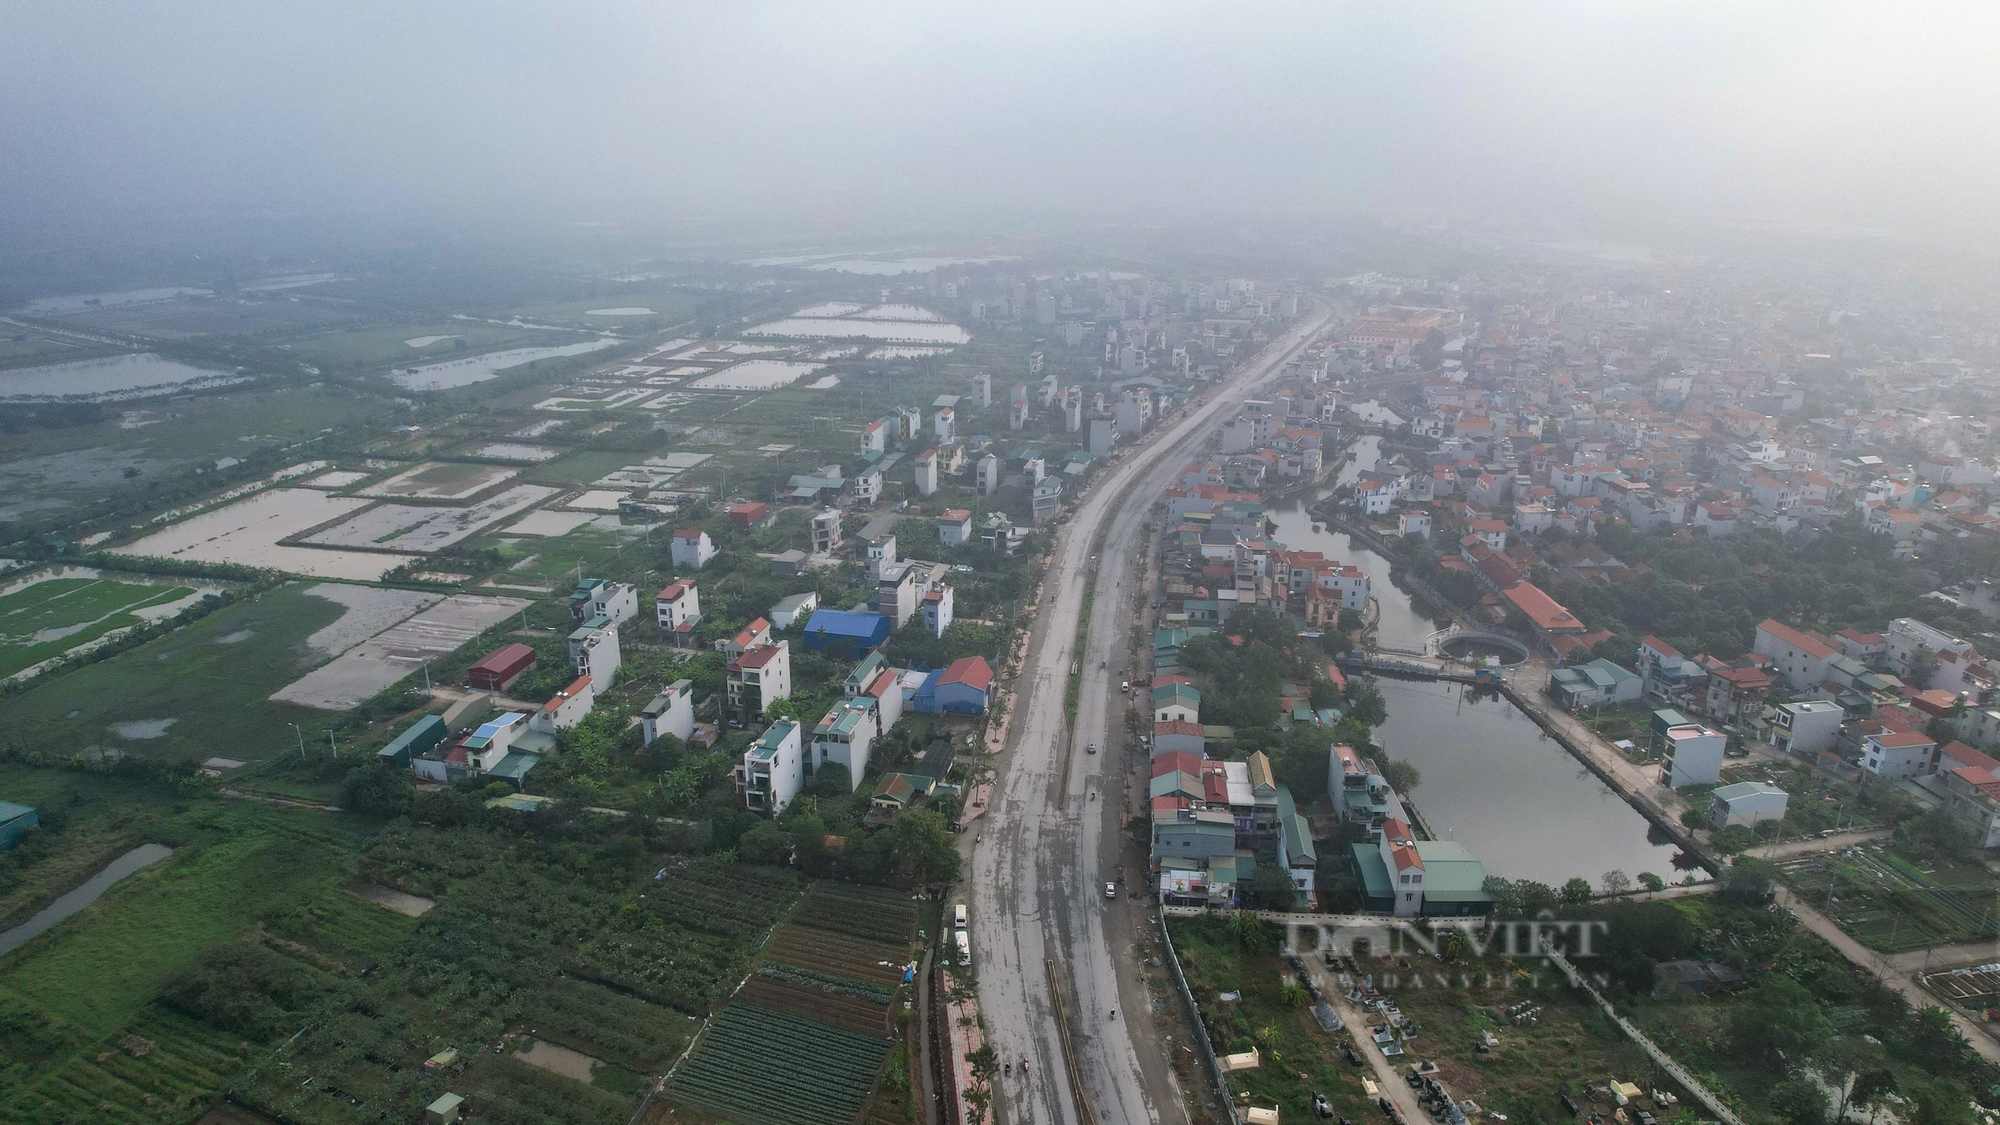 Hiện trạng tuyến đường gần 500 tỷ đồng ở Hà Nội sau 3 năm thi công- Ảnh 1.